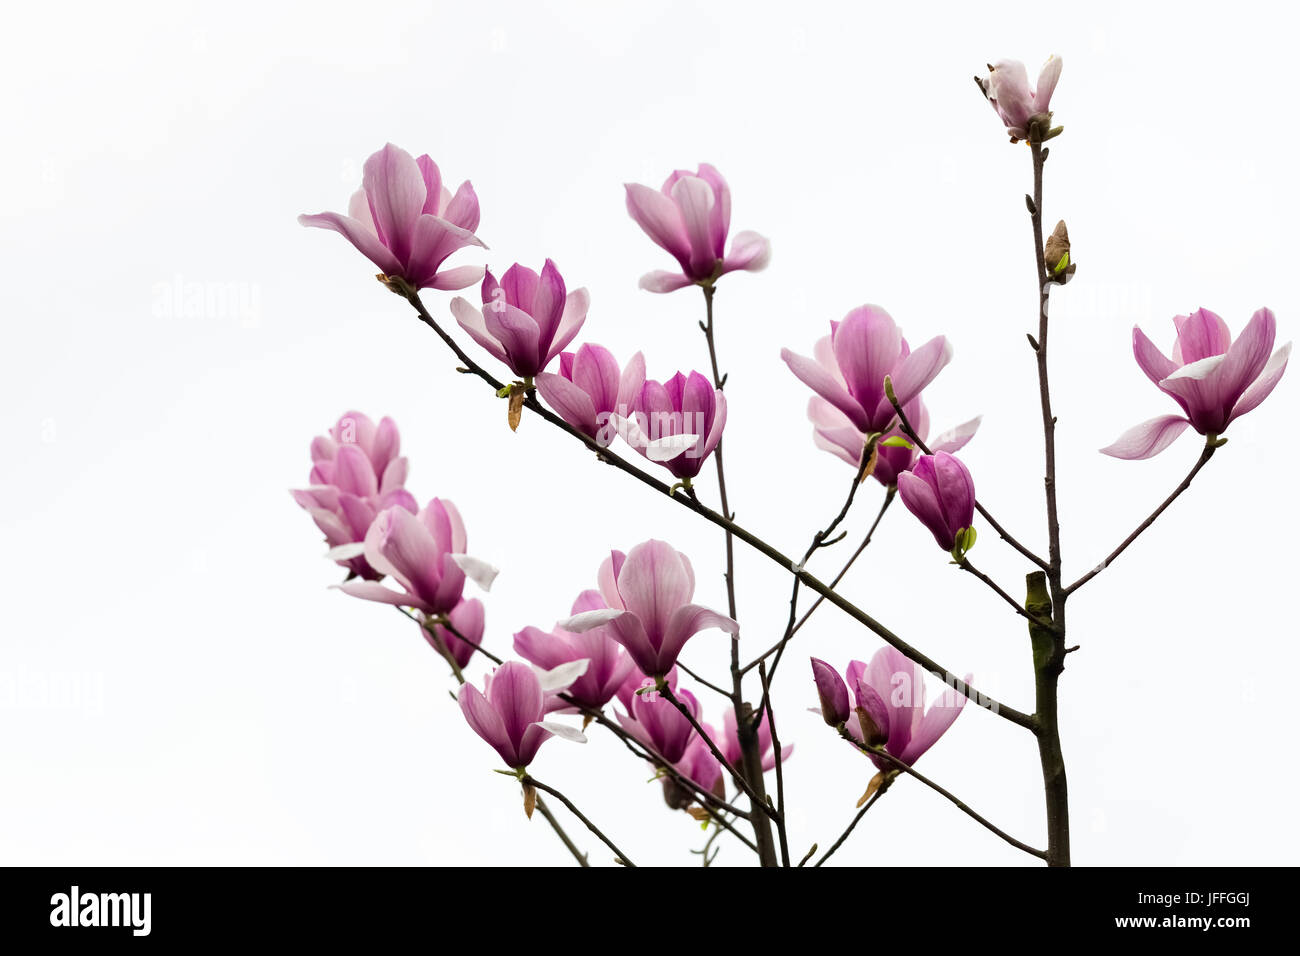 magnolia flower on white Stock Photo